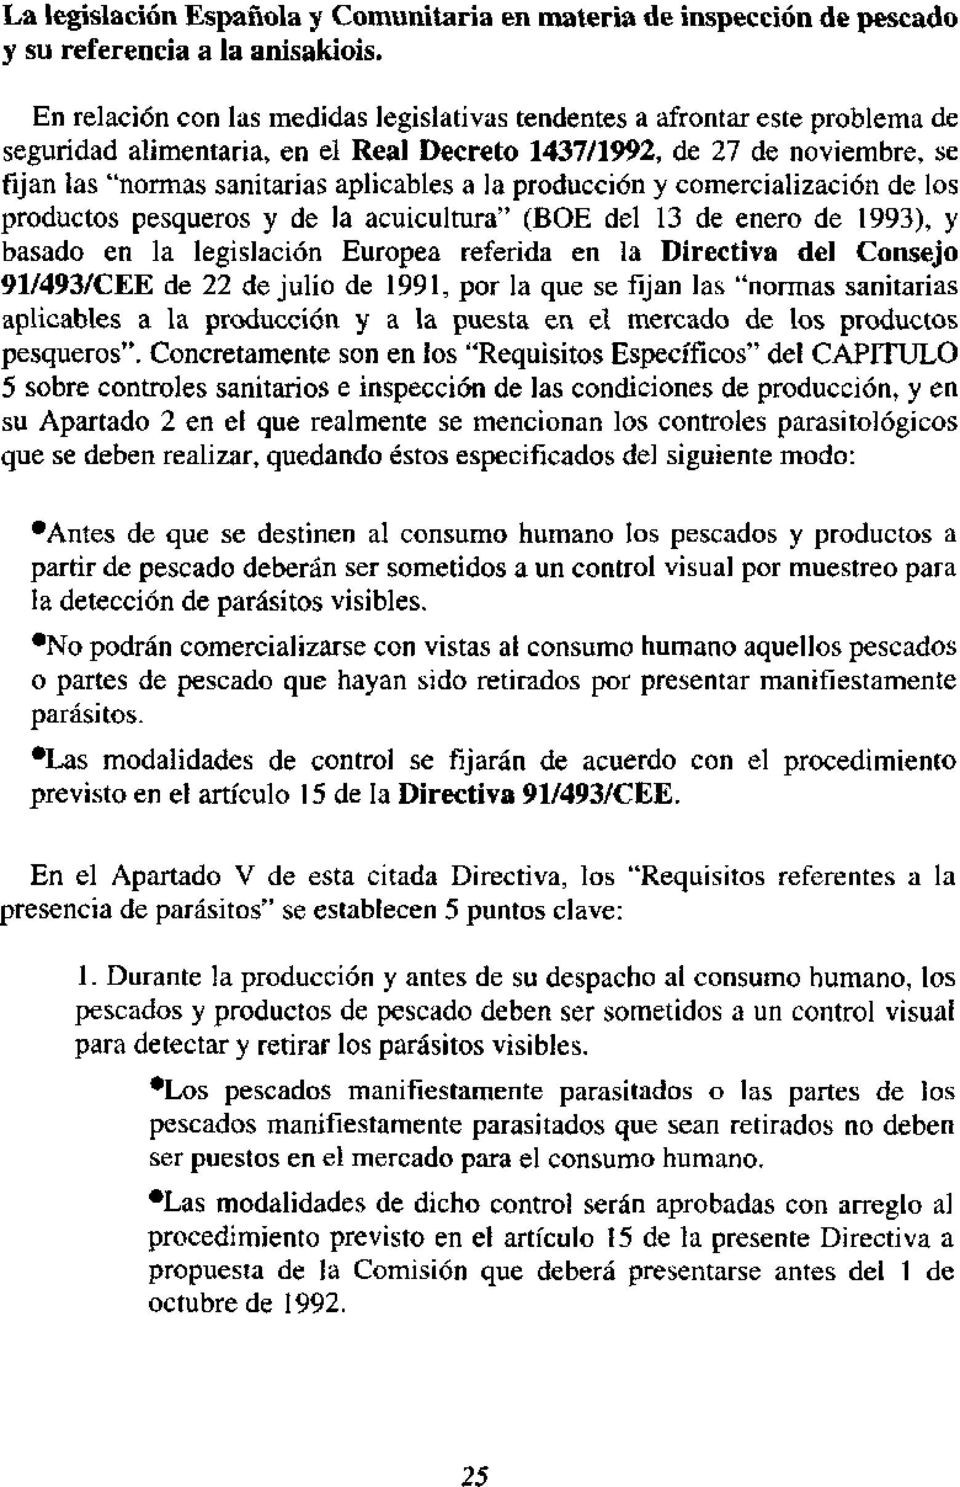 producción y comercialización de los productos pesqueros y de la acuicultura" (BOE del 13 de enero de 1993), y basado en la legislación Europea referida en la Directiva del Consejo 91/493/CEE de 22